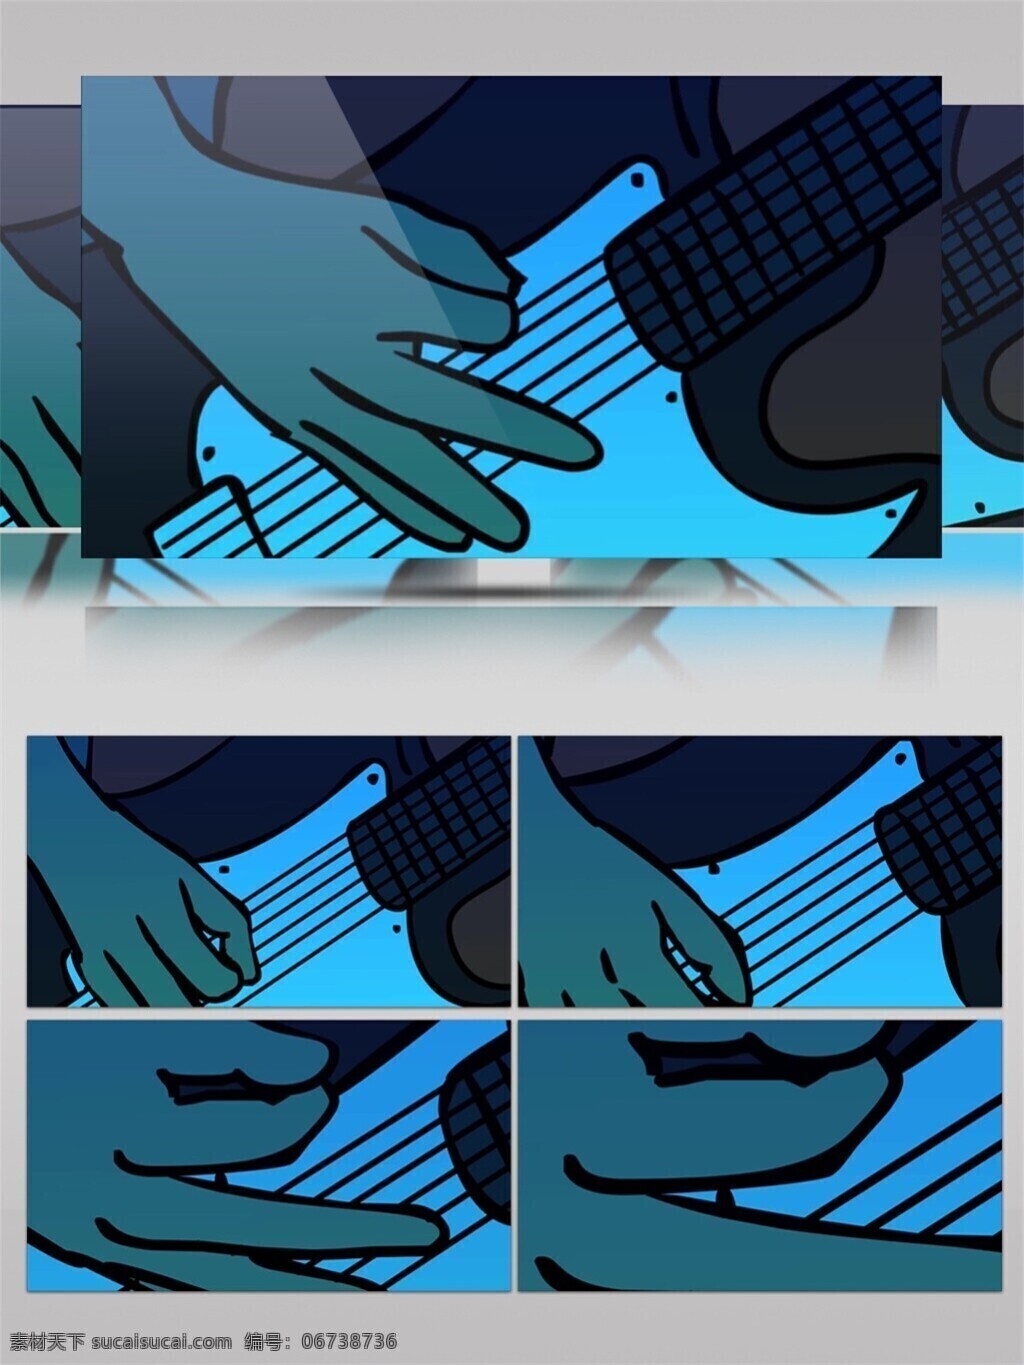 蓝光 摇滚 吉他 视频 音乐 蓝色 光束 手机壁纸 光斑散射 视觉享受